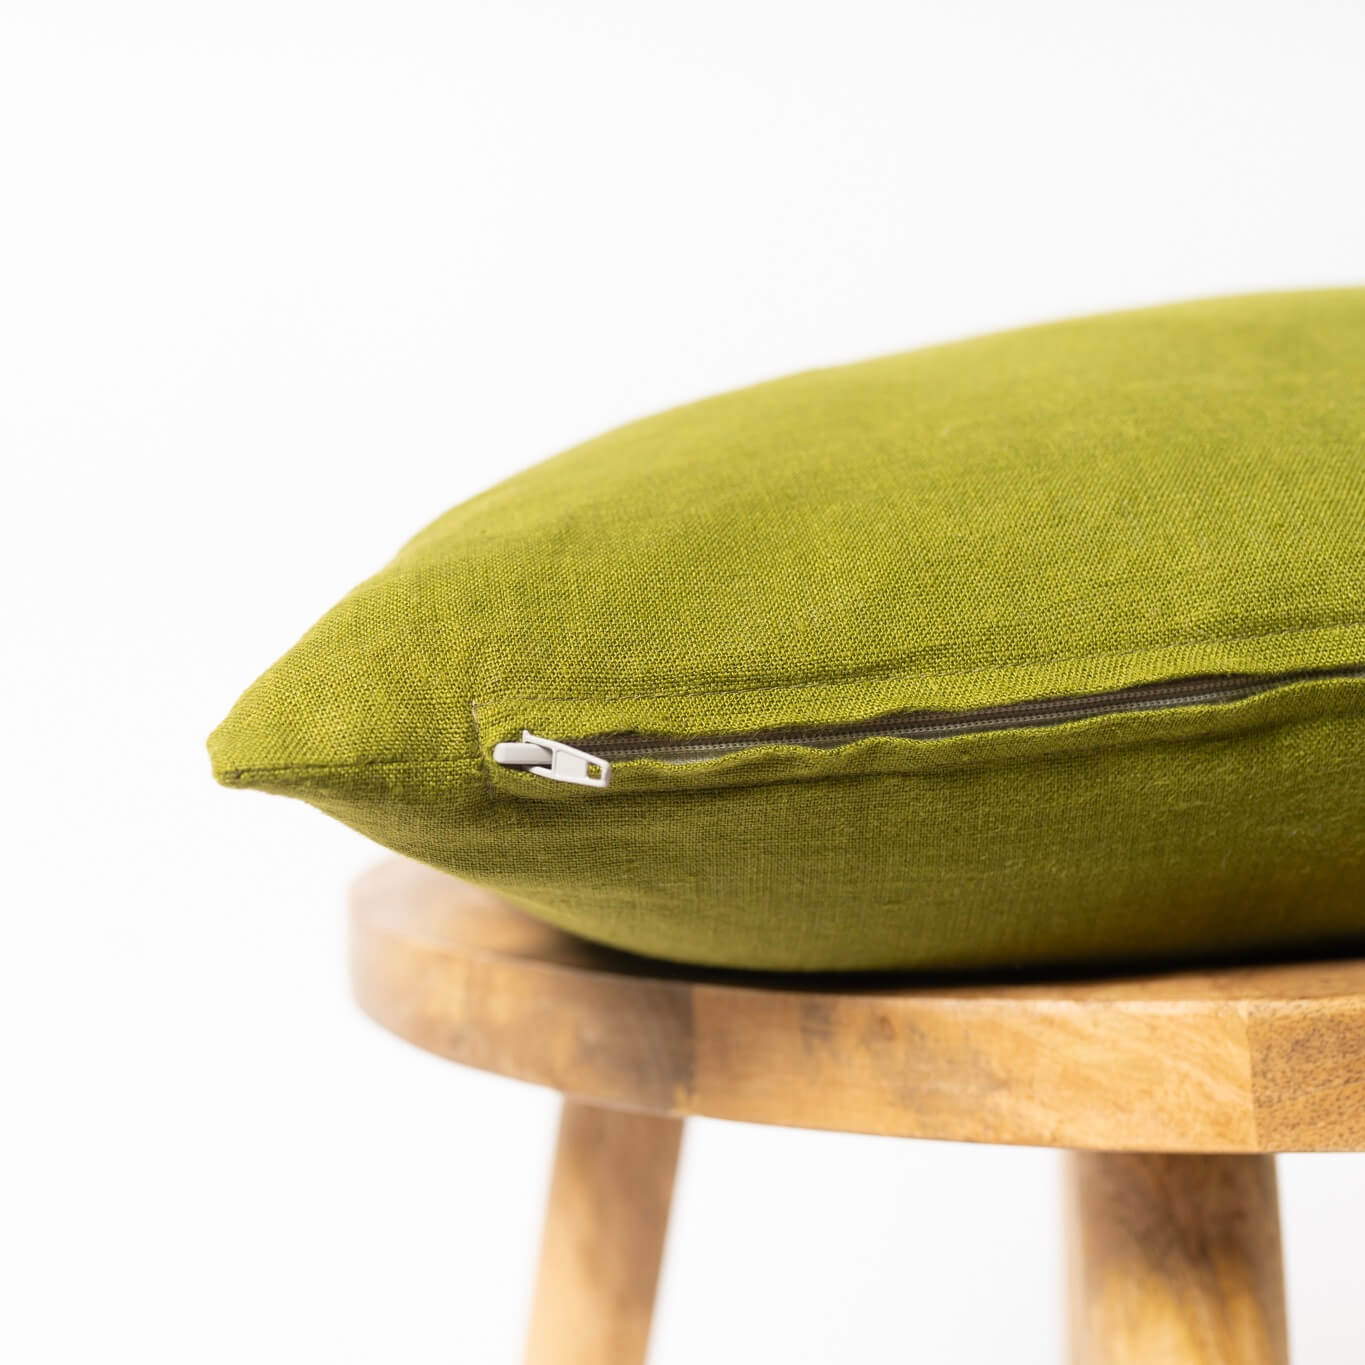 Moss Green Linen Cushion Cover